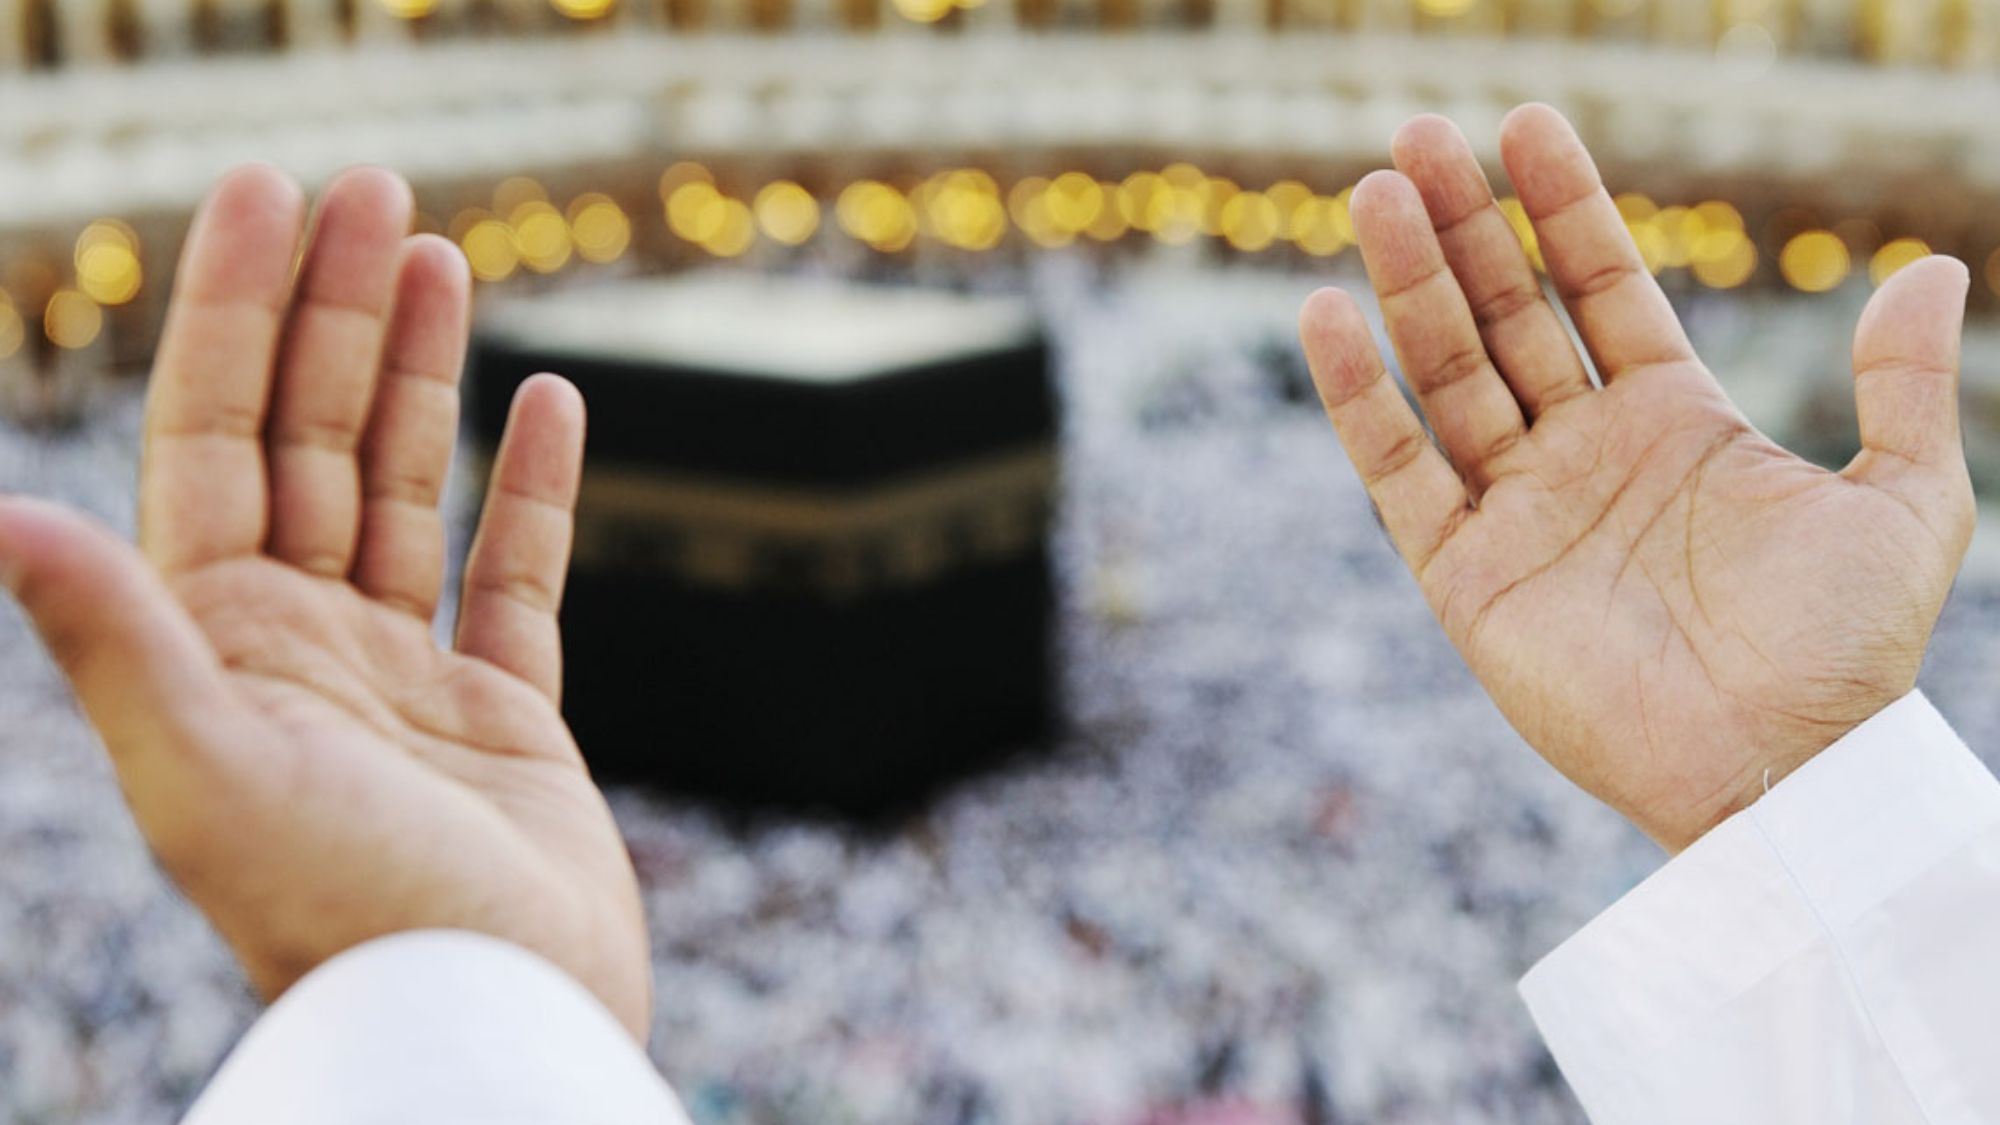 Muslim pilgrim praying in front of the kaaba during umrah journey